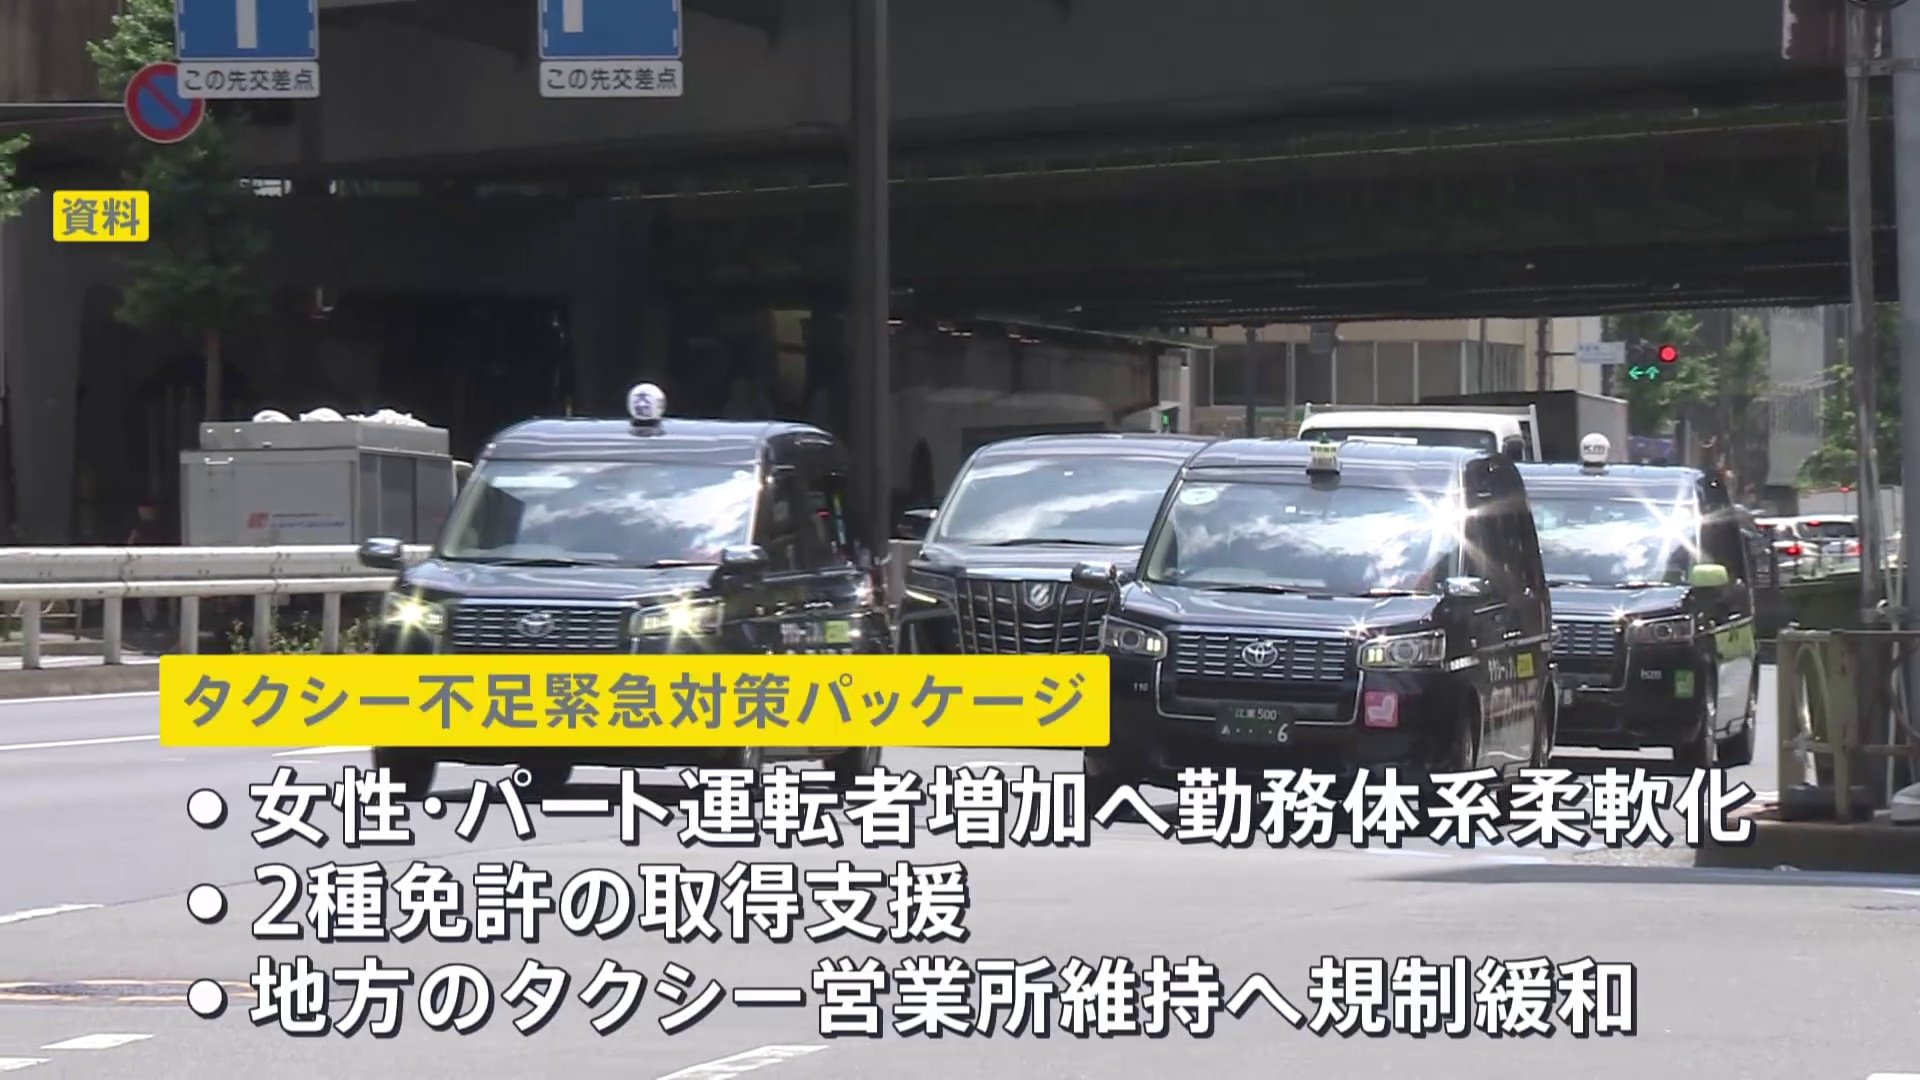 【独自】“タクシー不足”解消に向け政府が緊急対策パッケージを発表へ